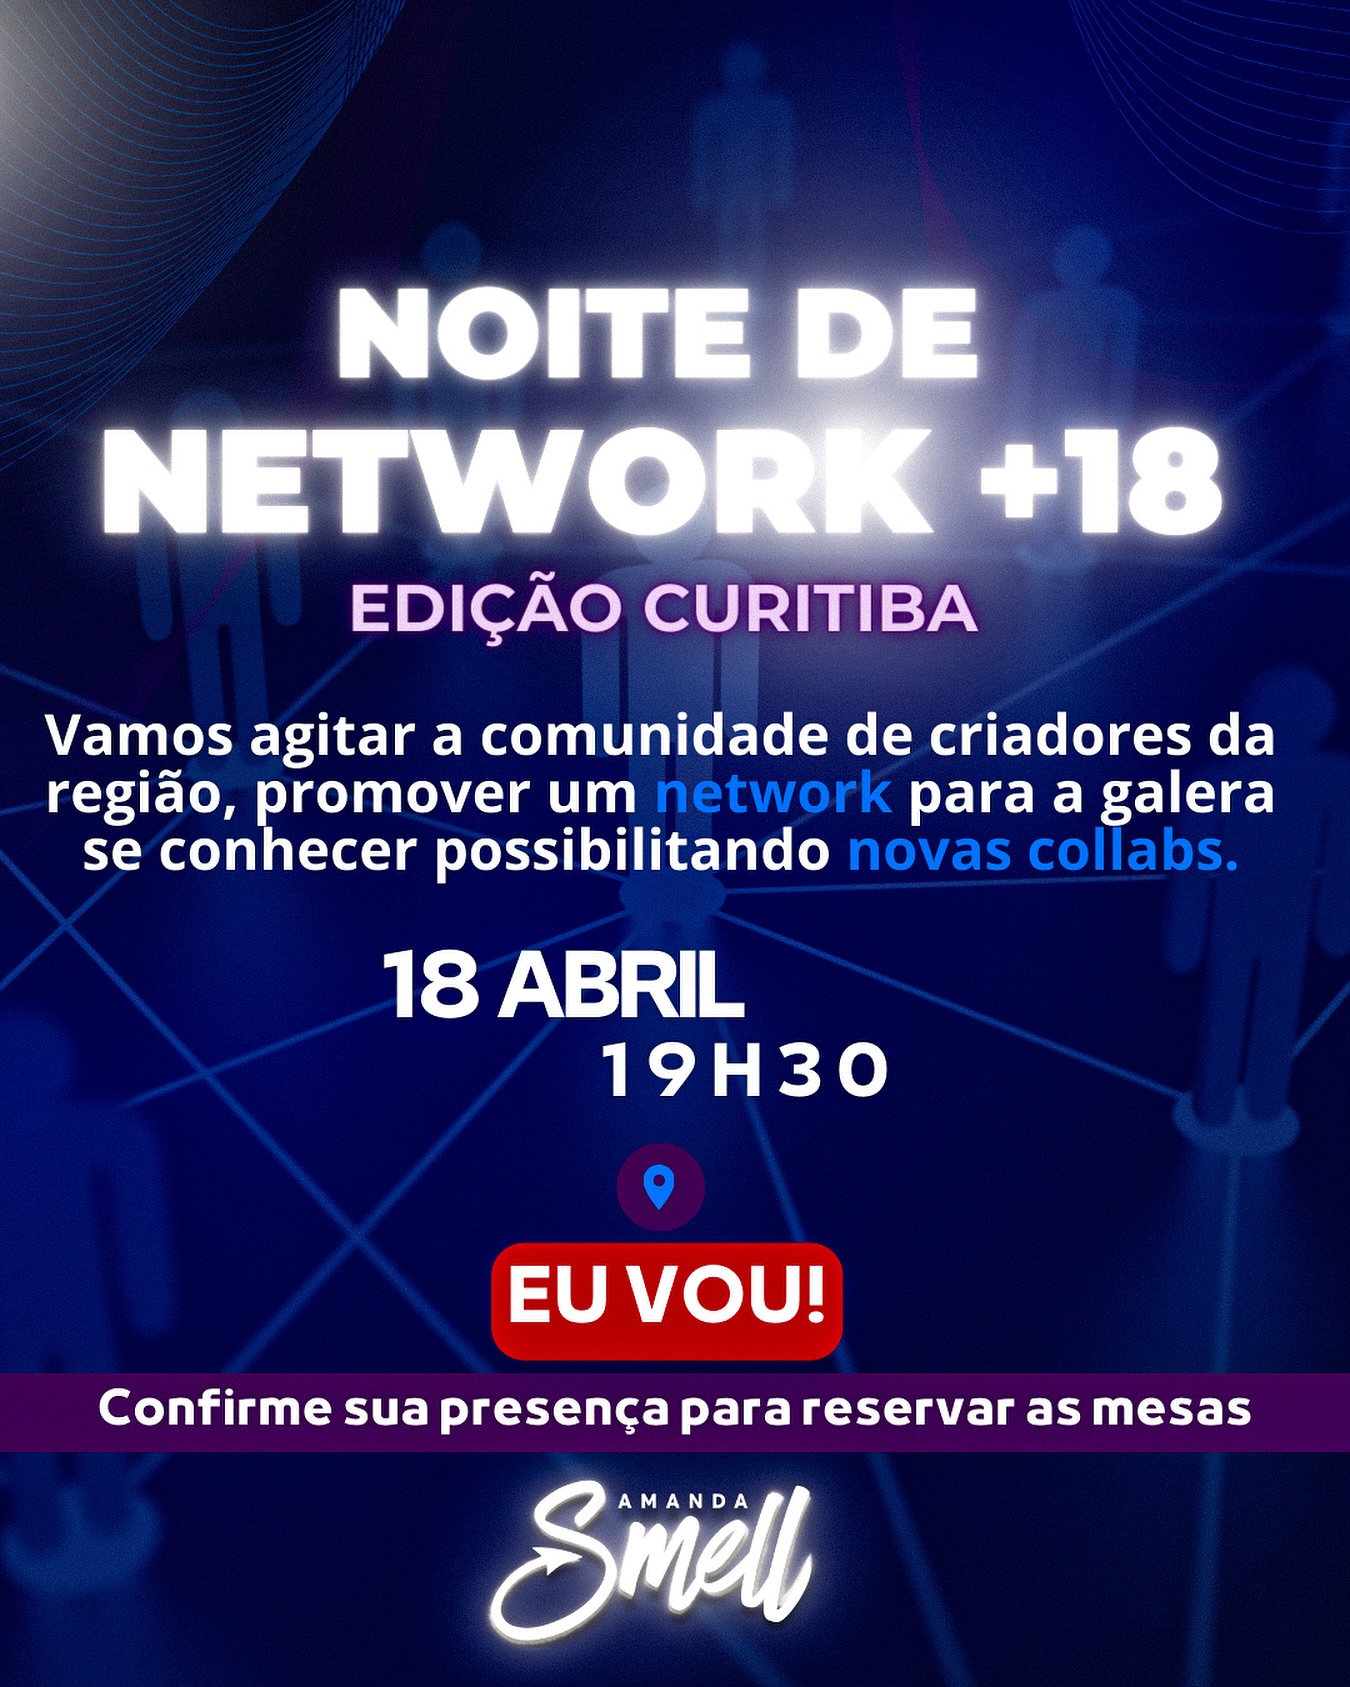 Hey creators de de Curitiba, essa noite de network será dedicada a vocês. Bora? 

Vamos nos reunir, bater um papo, fazer muitas mídias, e o mais importante; viabilizar novas collabs!